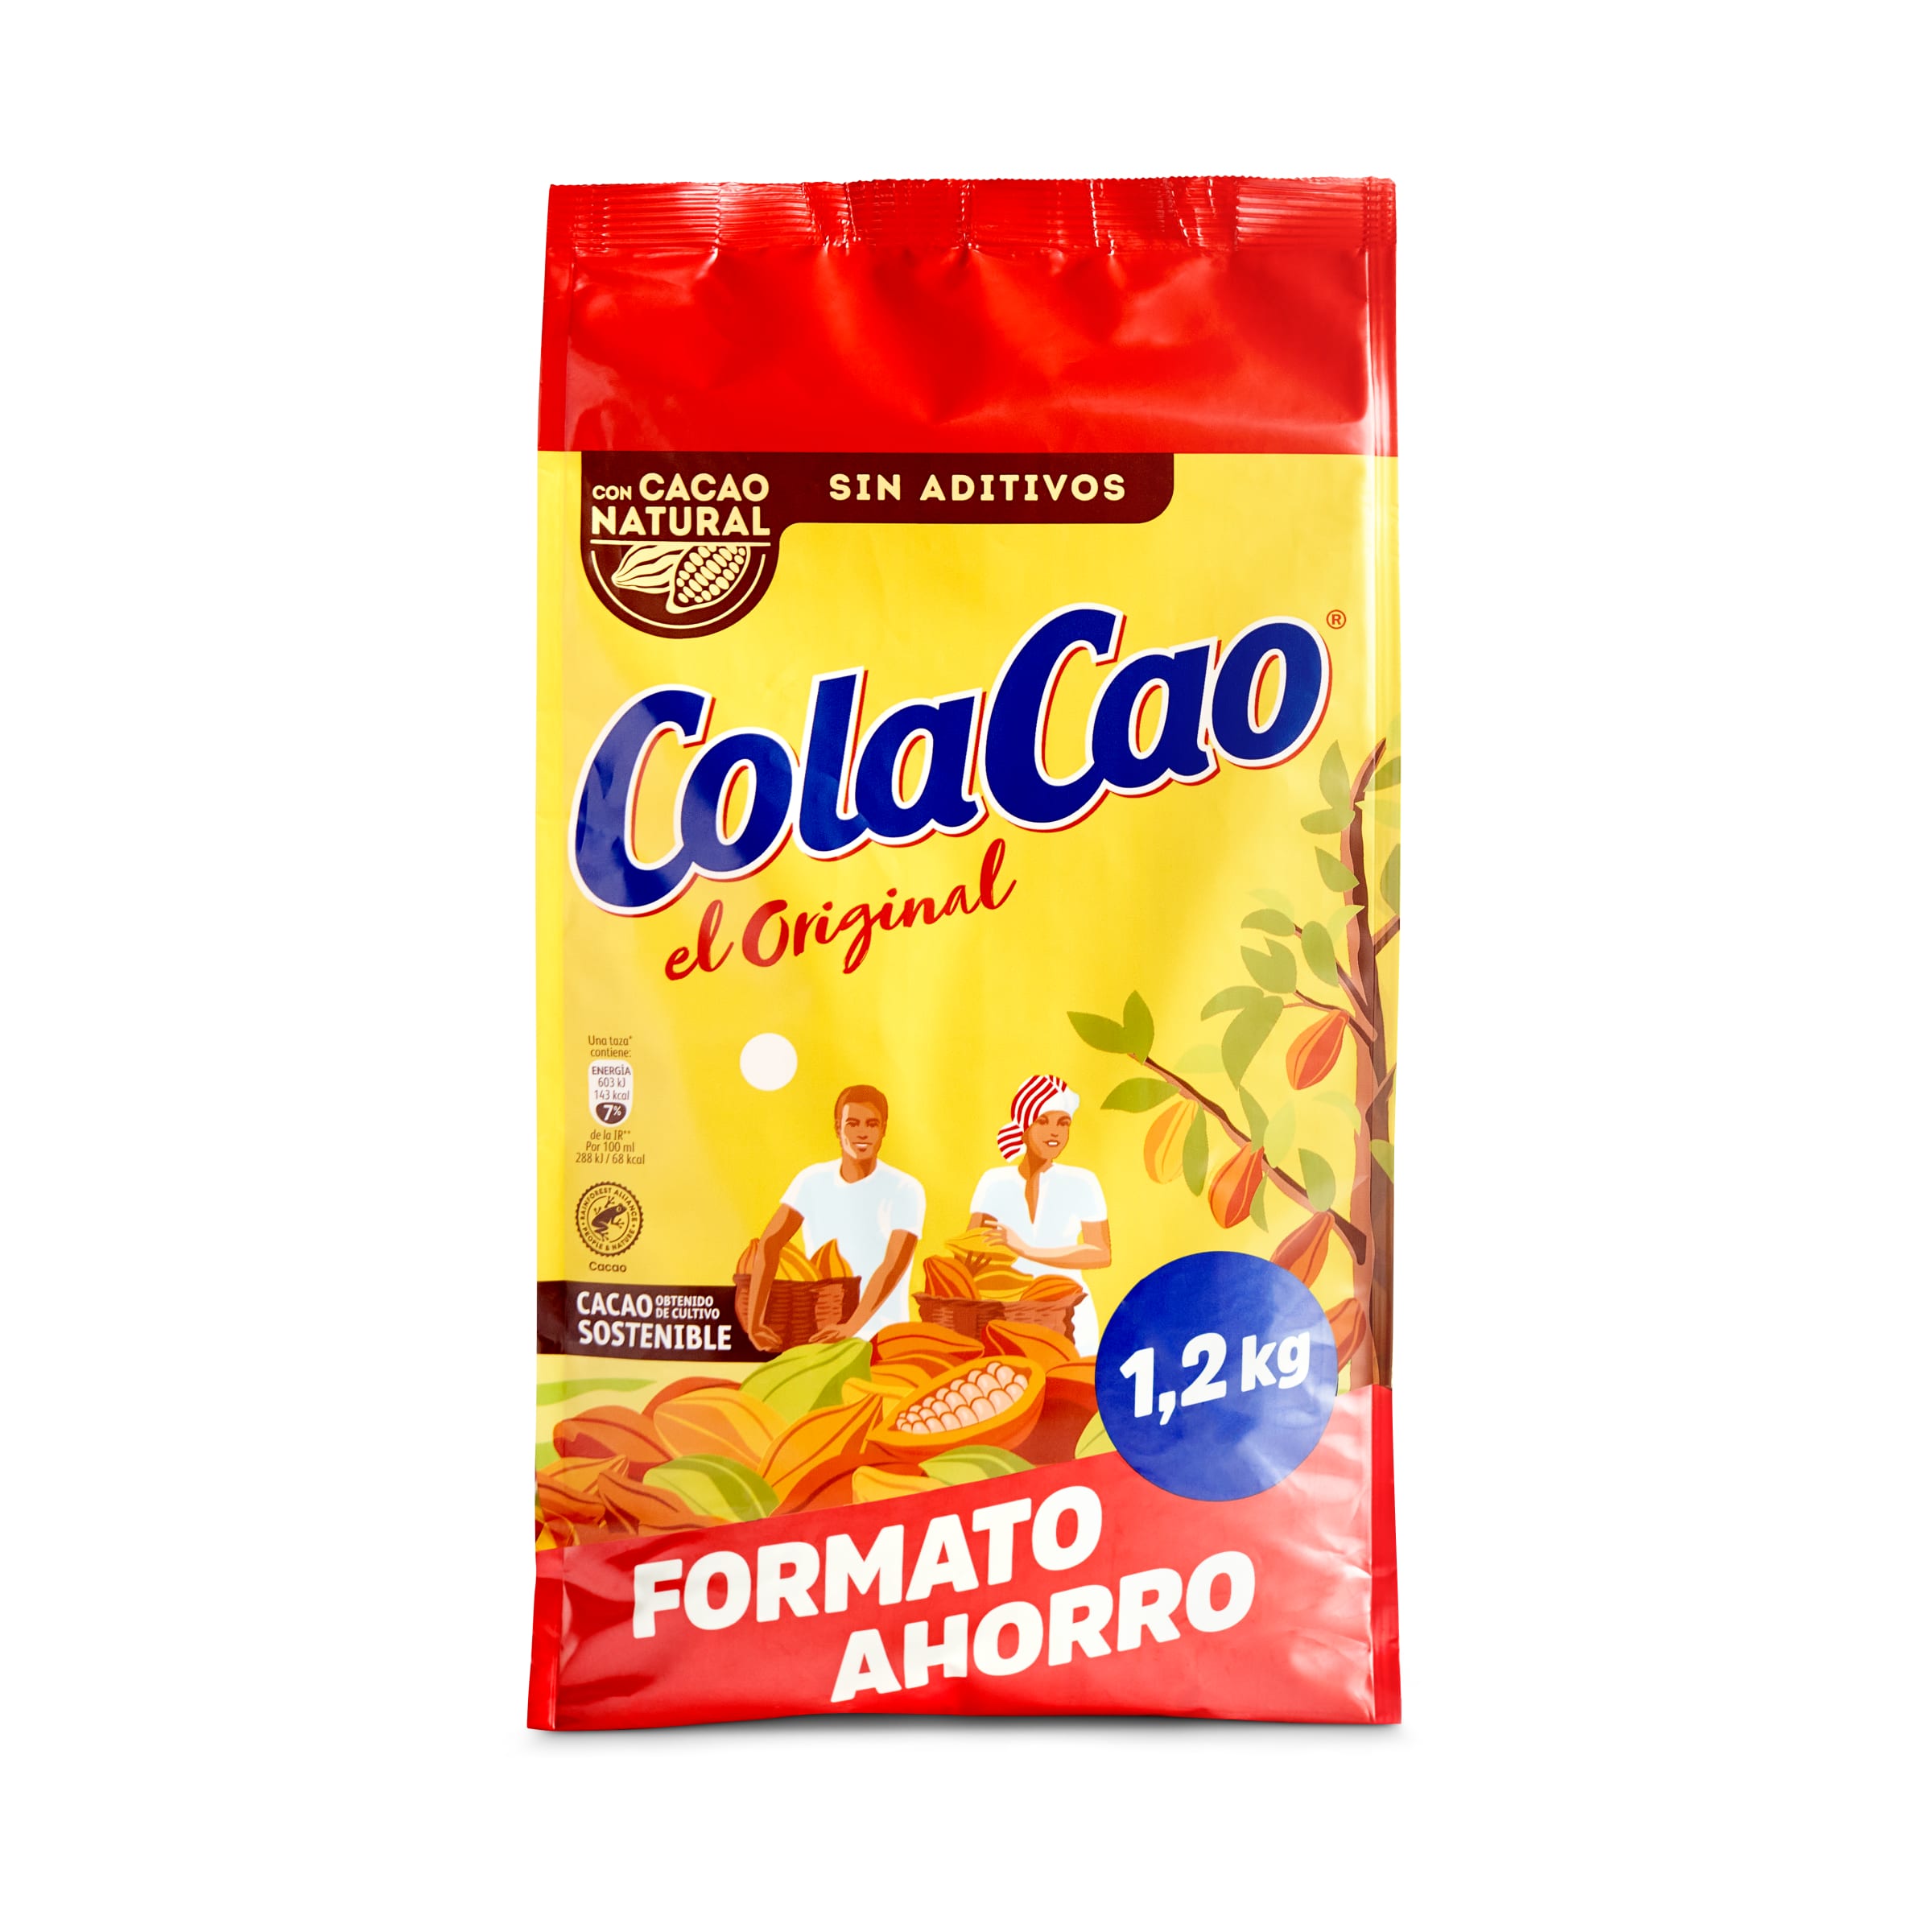 Cacao Cola Cao Original (1,2 kg) 